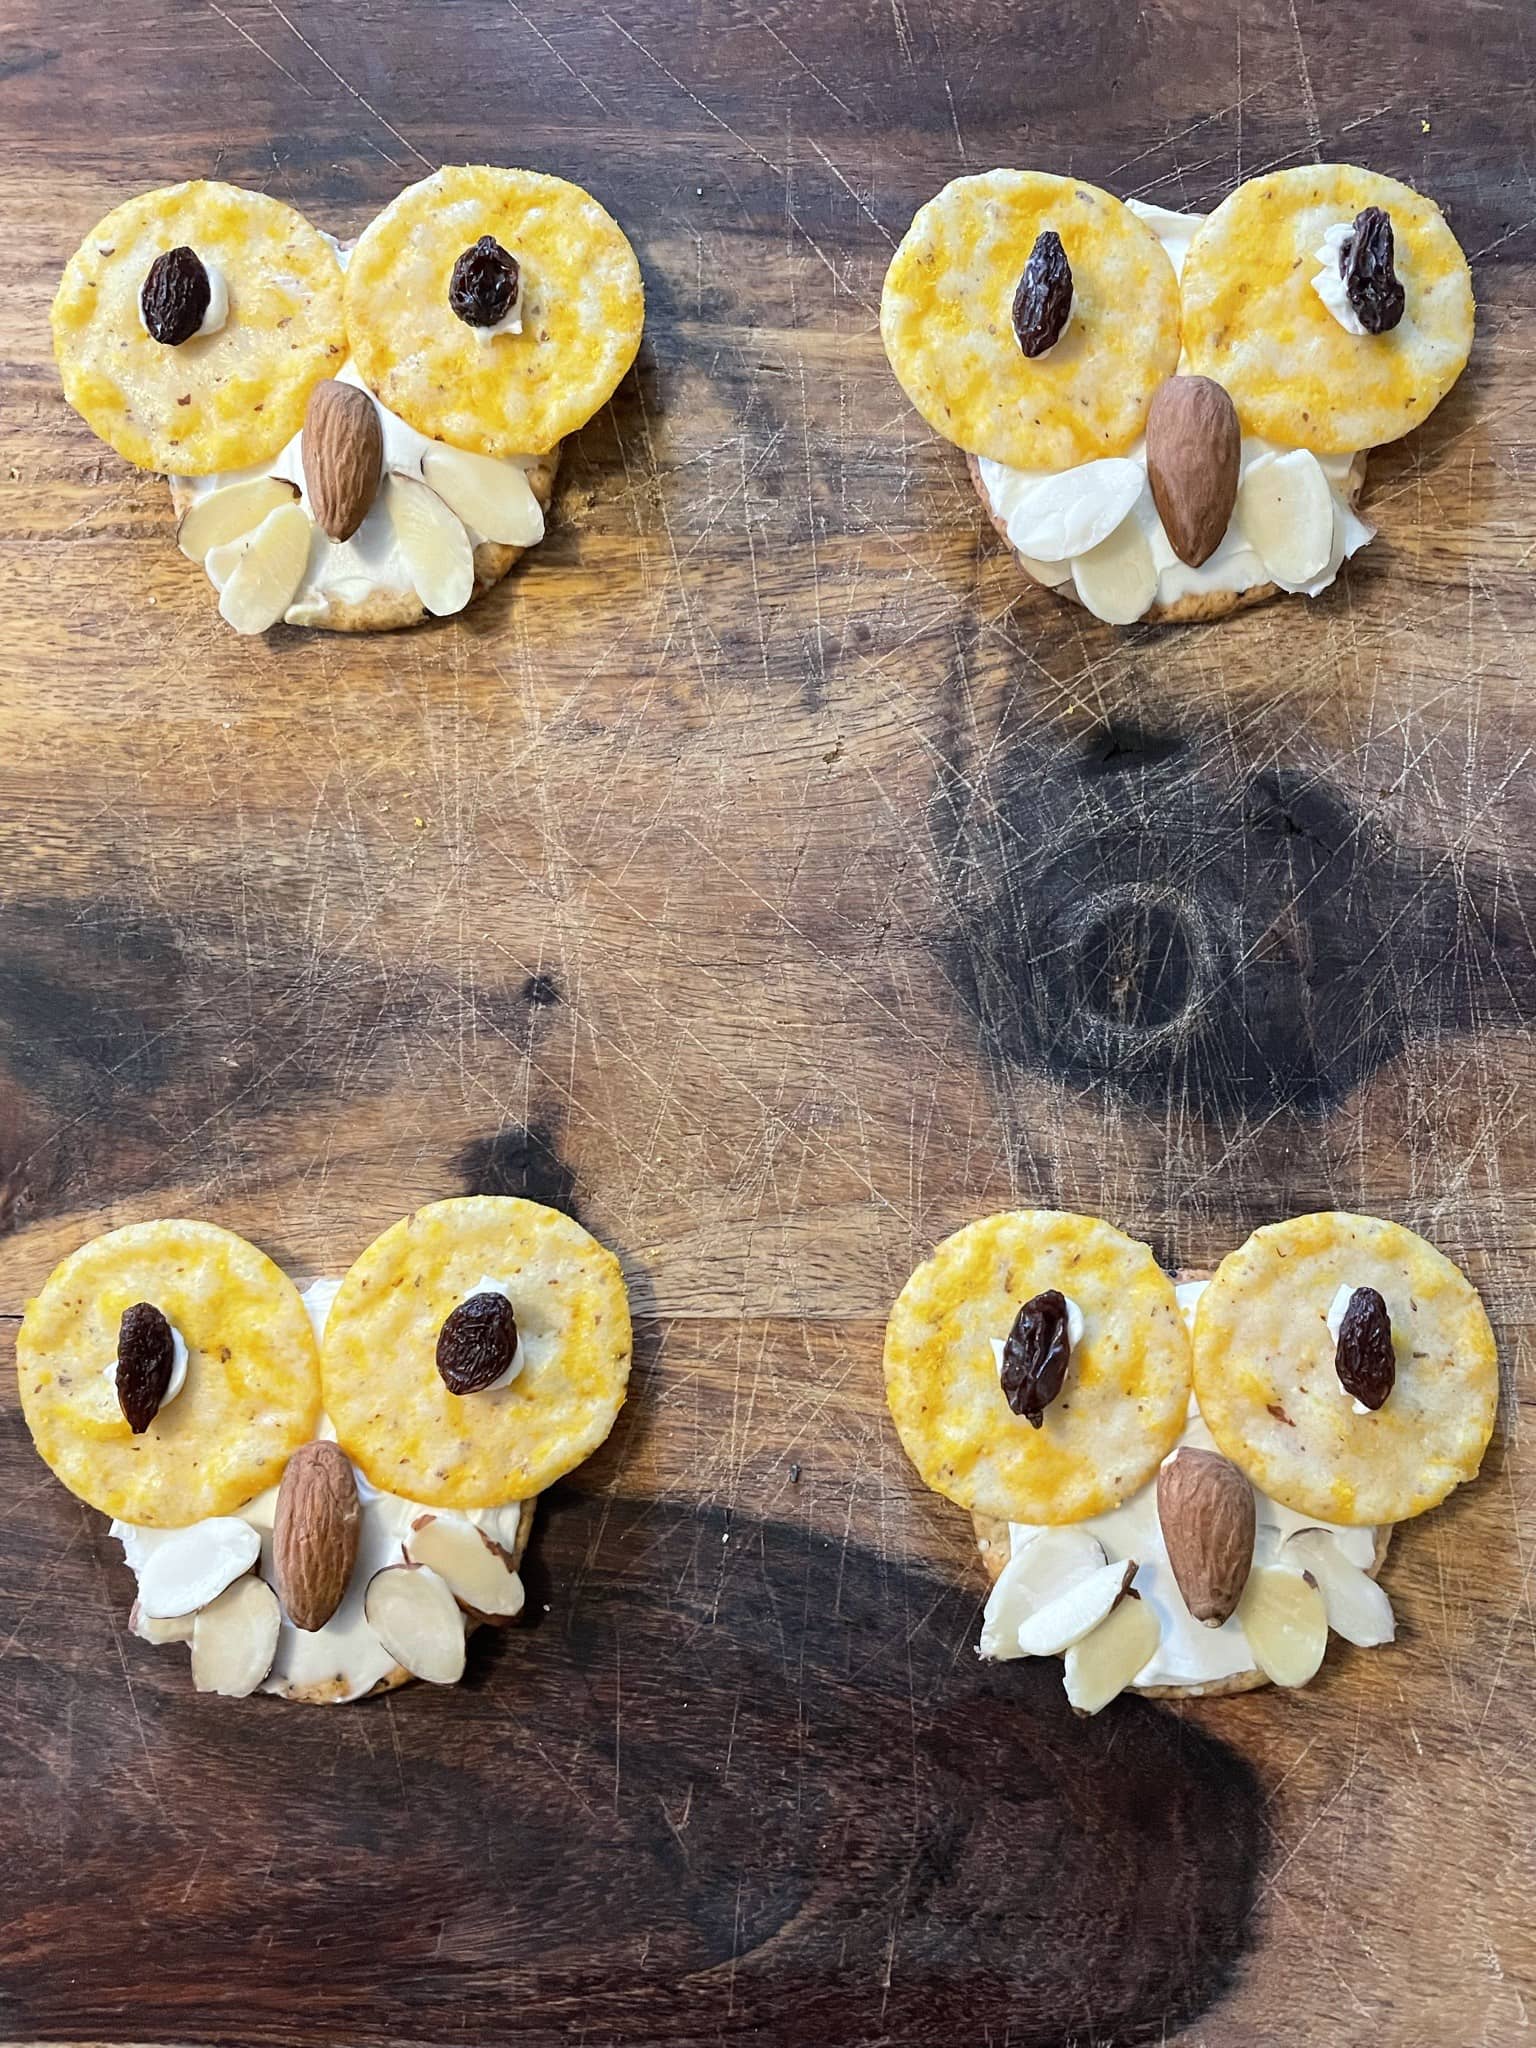 Owl snacks